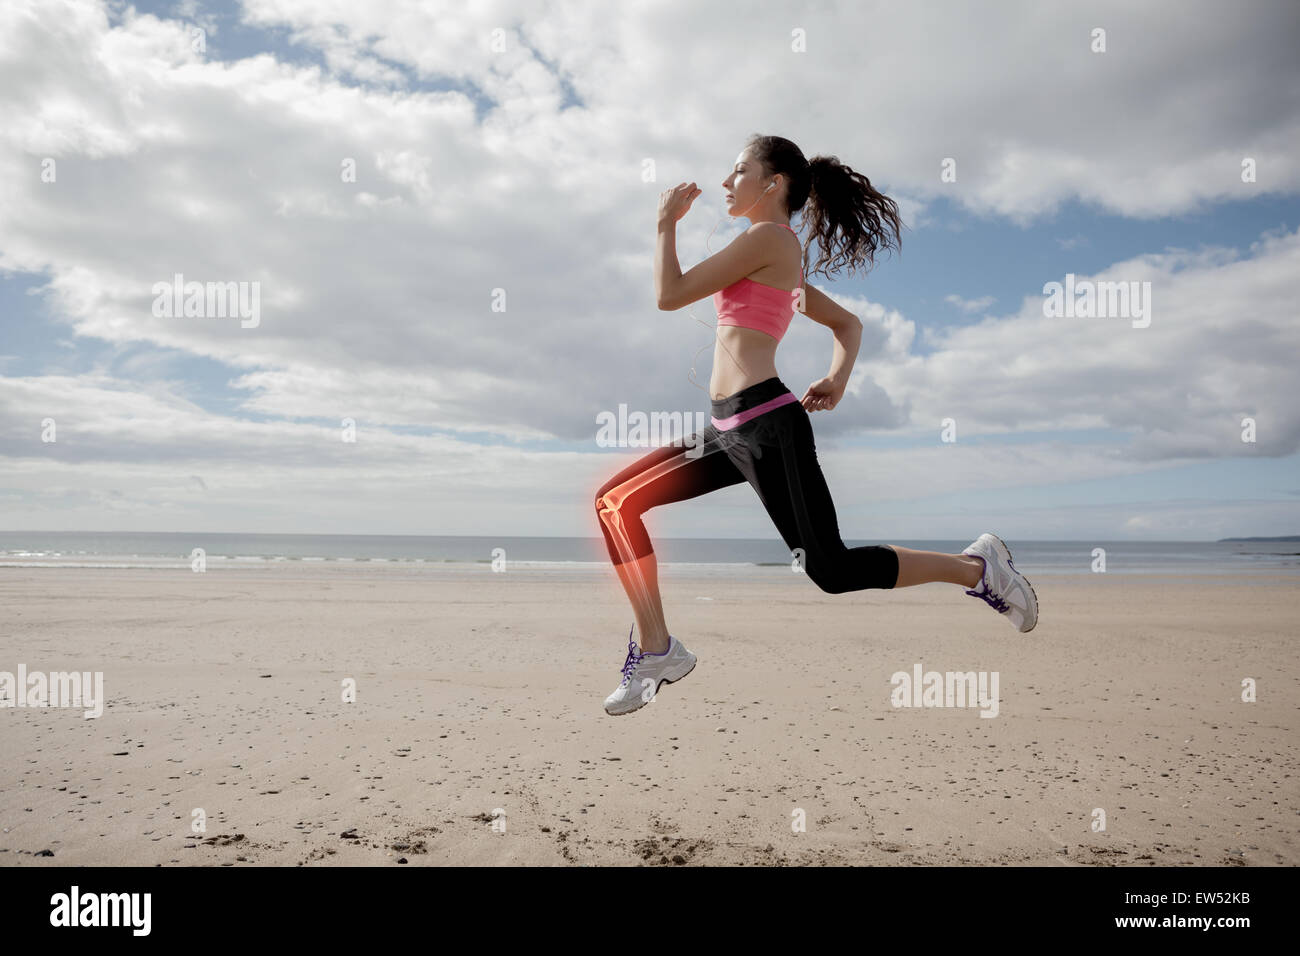 Les os des jambes en surbrillance de femme jogging on beach Banque D'Images